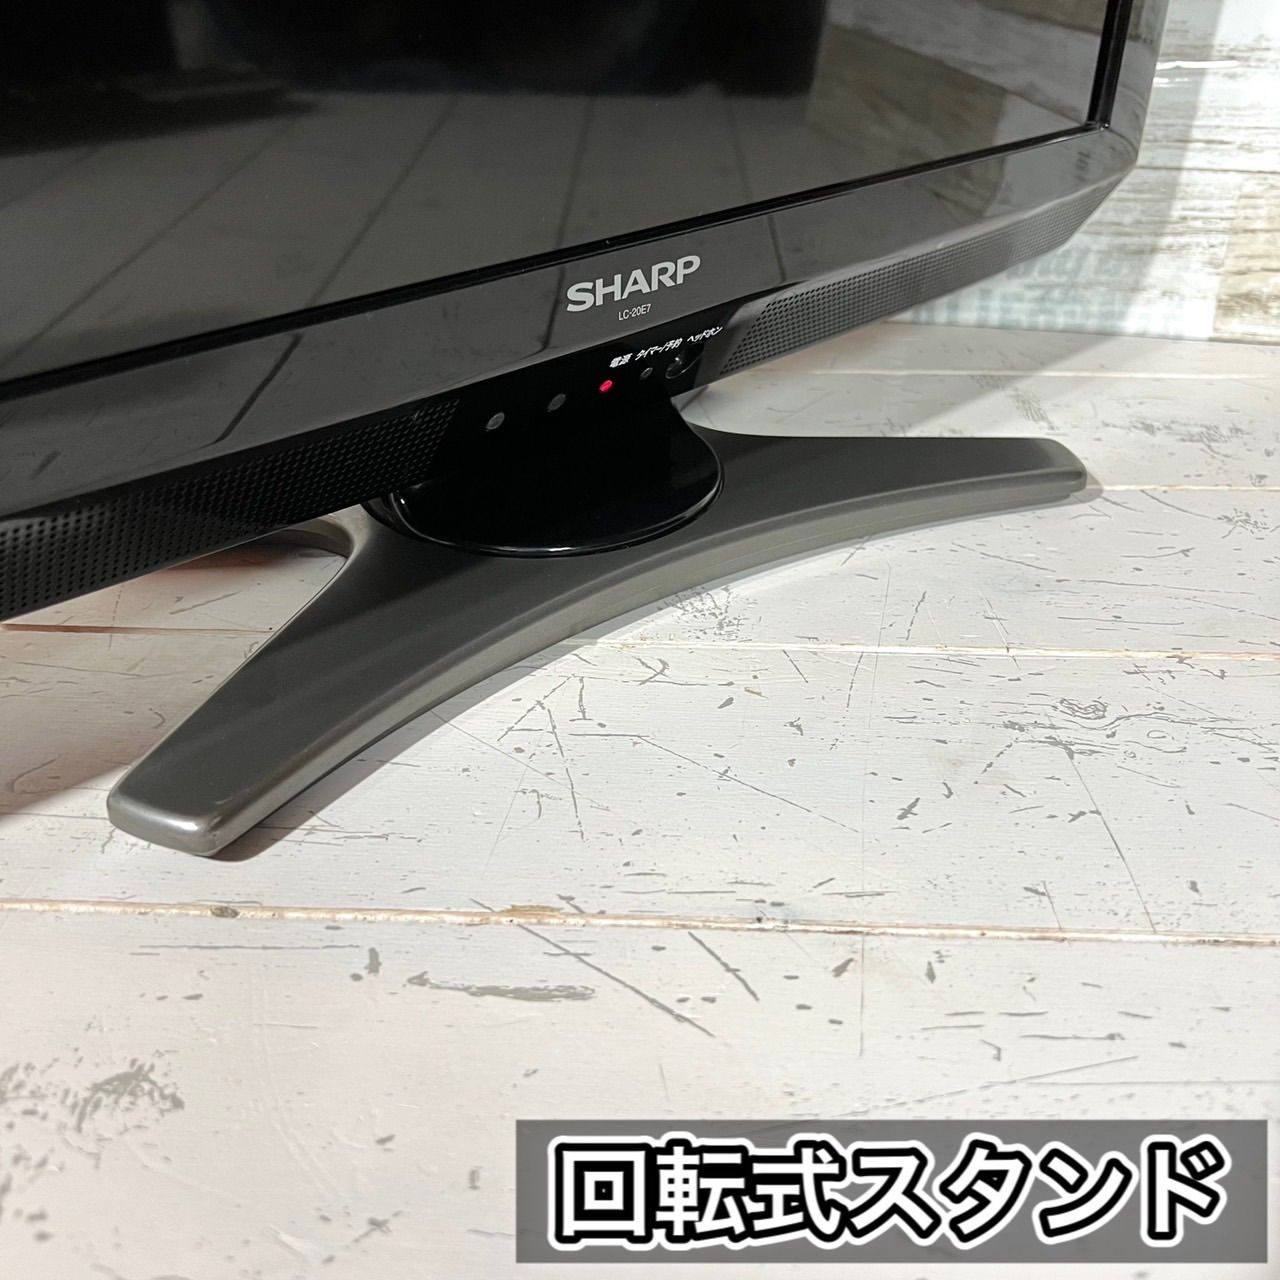 すぐ見れる‼️】SHARP AQUOS 液晶テレビ 20型✨ PC入力可能⭕️ - メルカリ